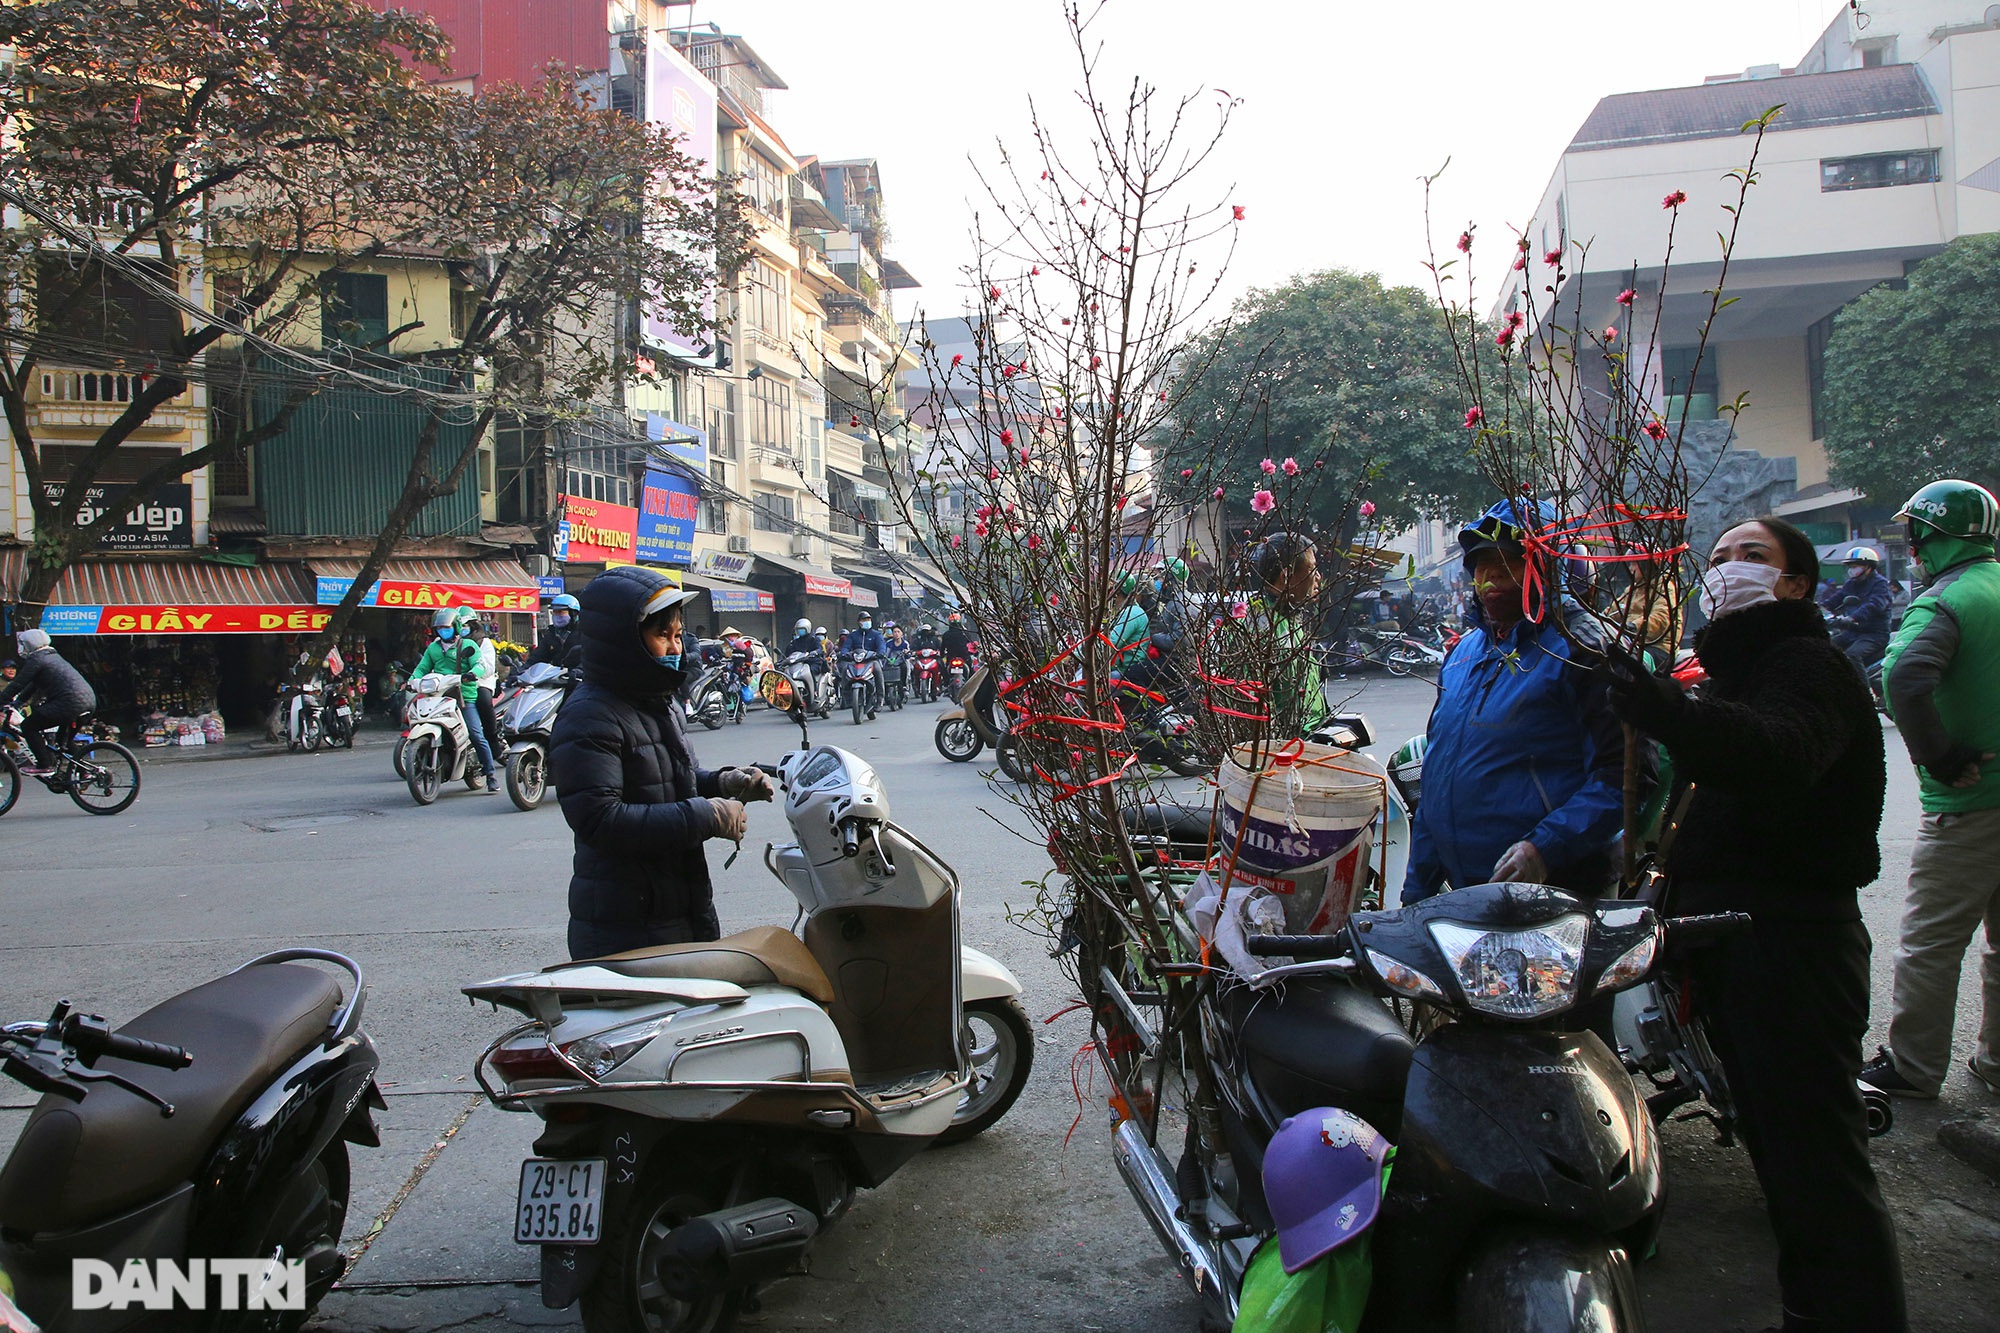  Thời điểm hiện tại ở khu vực phố cổ Hà Nội, đào cành chủ yếu được mang về từ Nhật Tân, đây là nơi cung cấp loại đào bích ưa thích vào dịp Tết của người dân thủ đô.